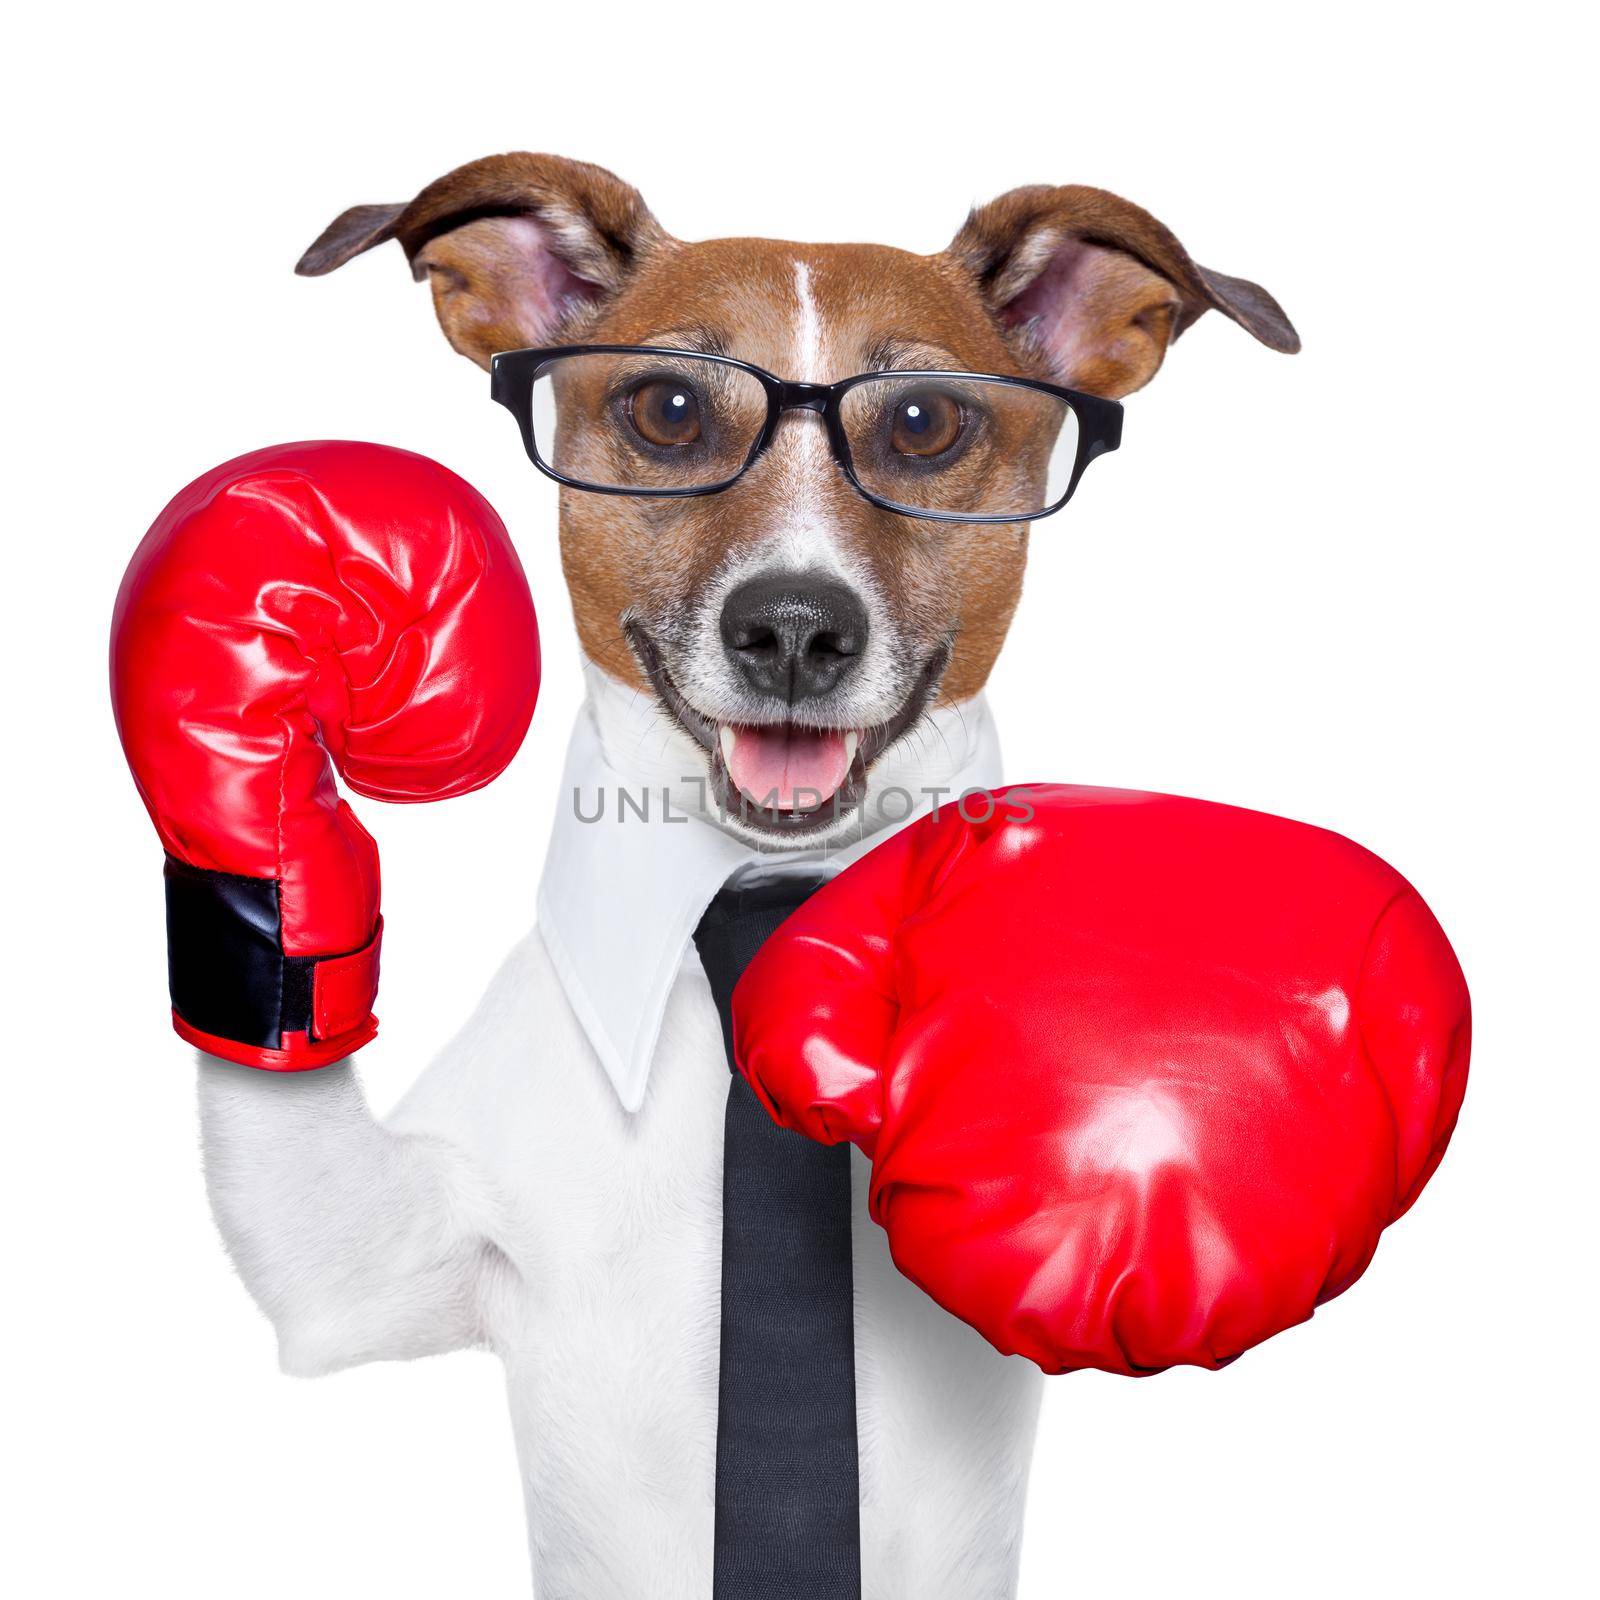 Boxing dog by Brosch